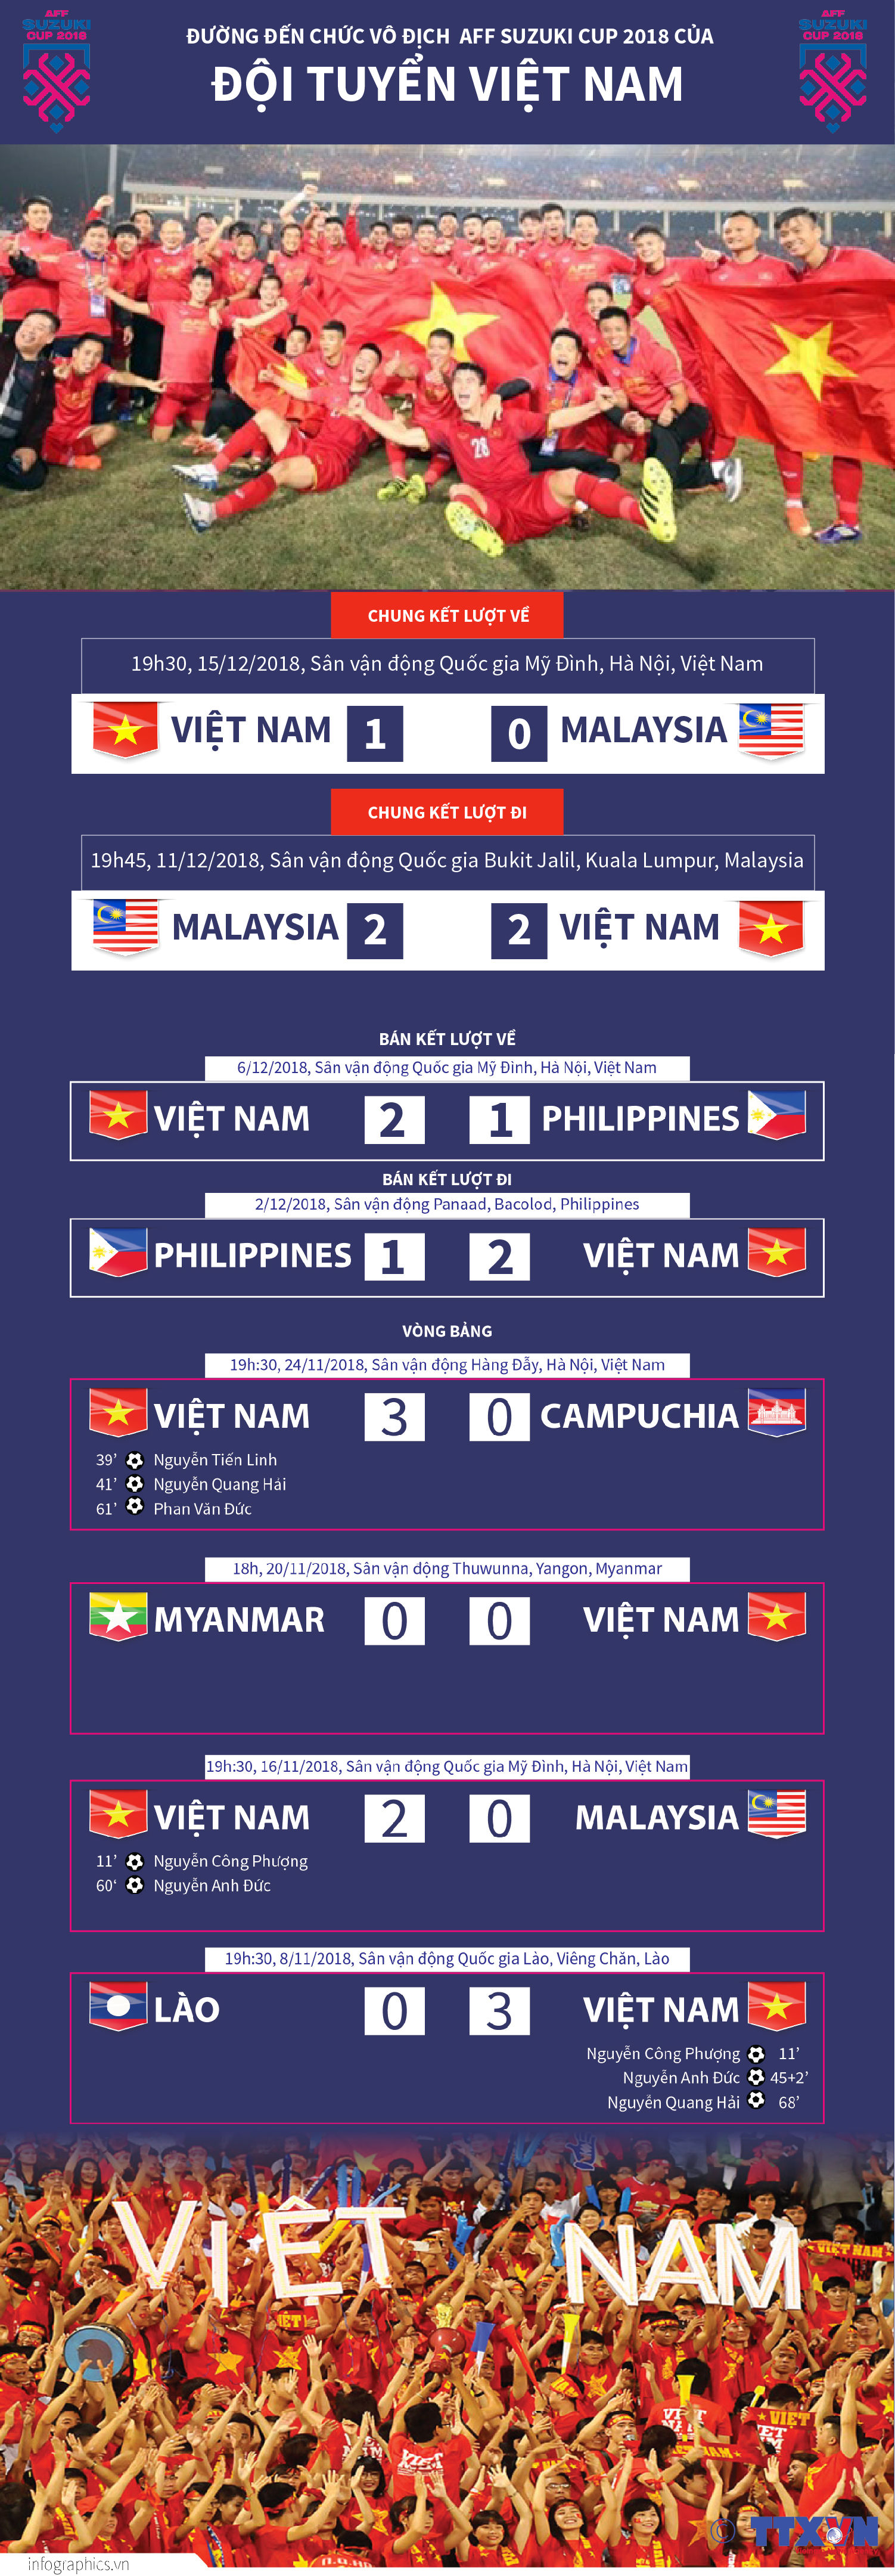 Việt Nam vô địch AFF Suzuki Cup 2018 như thế nào?  